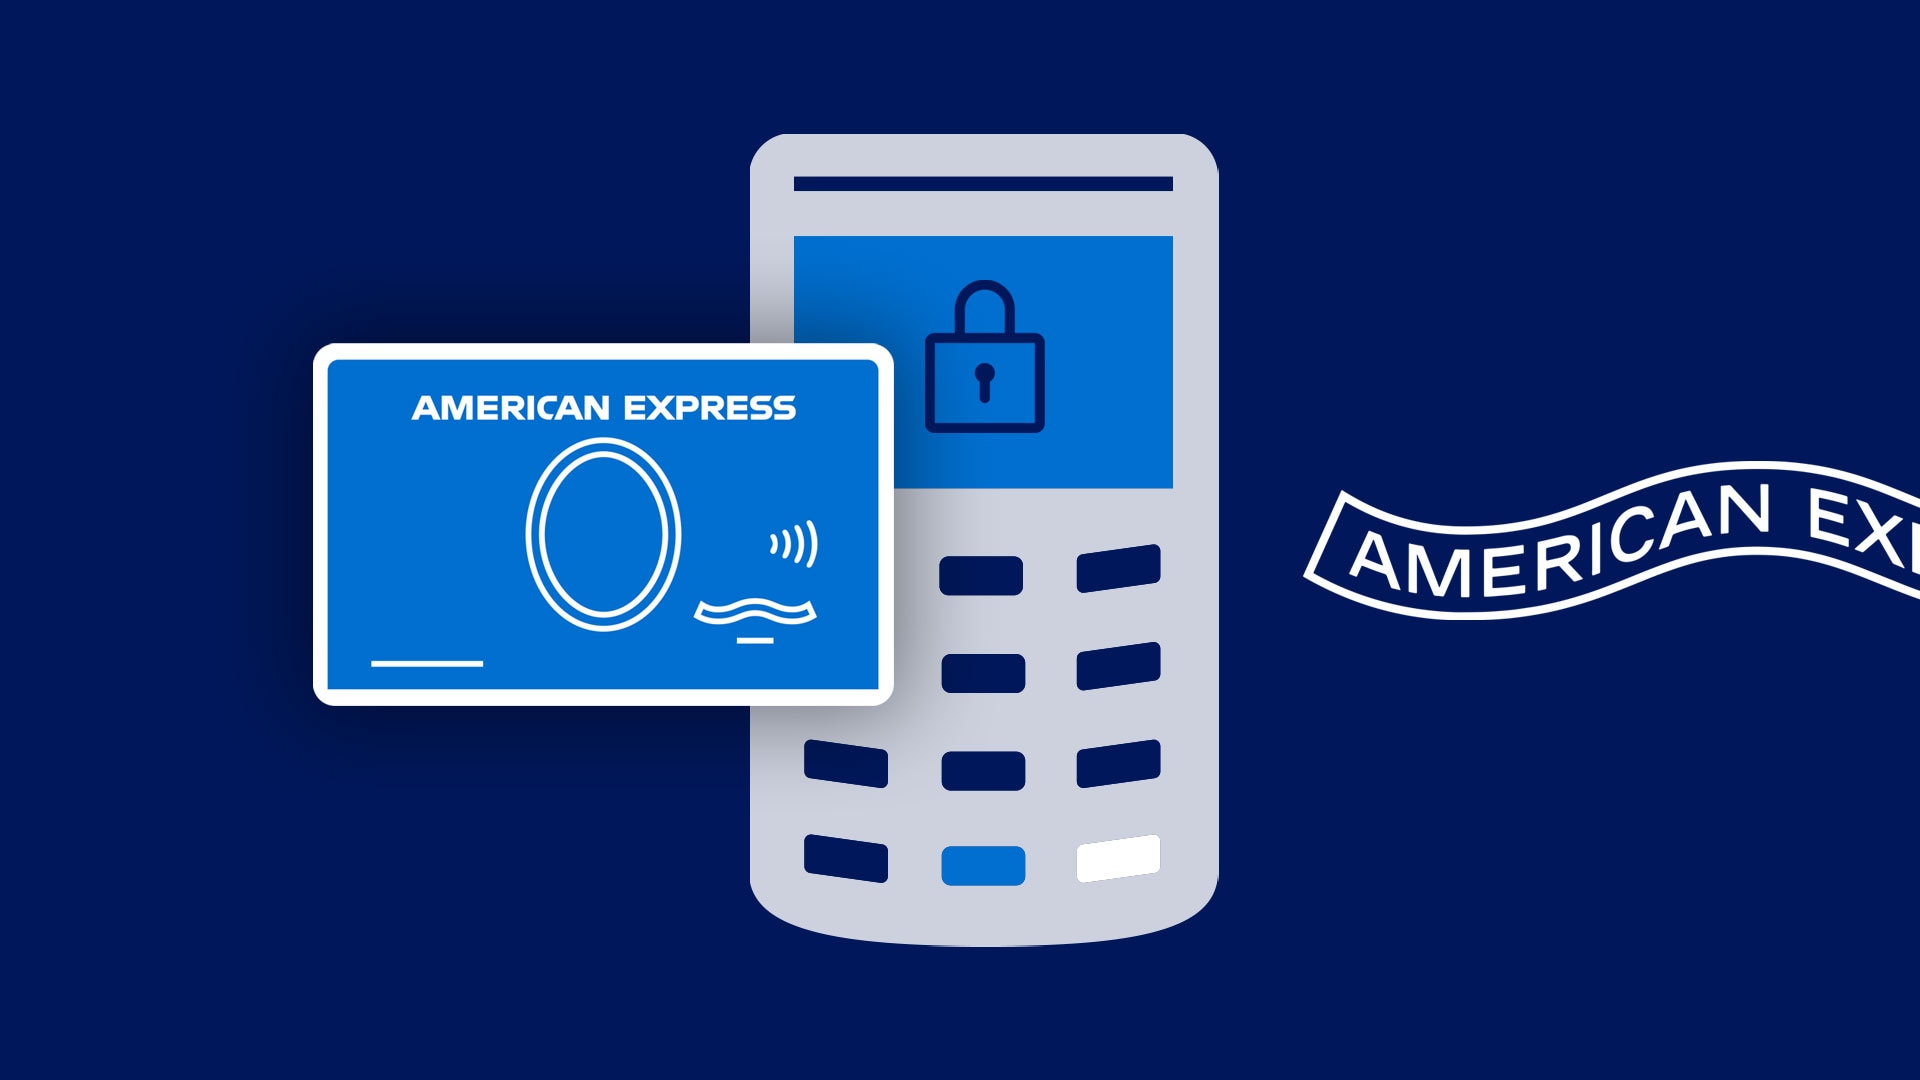 zorgeloos-betalen-met-je-american-express-business-card